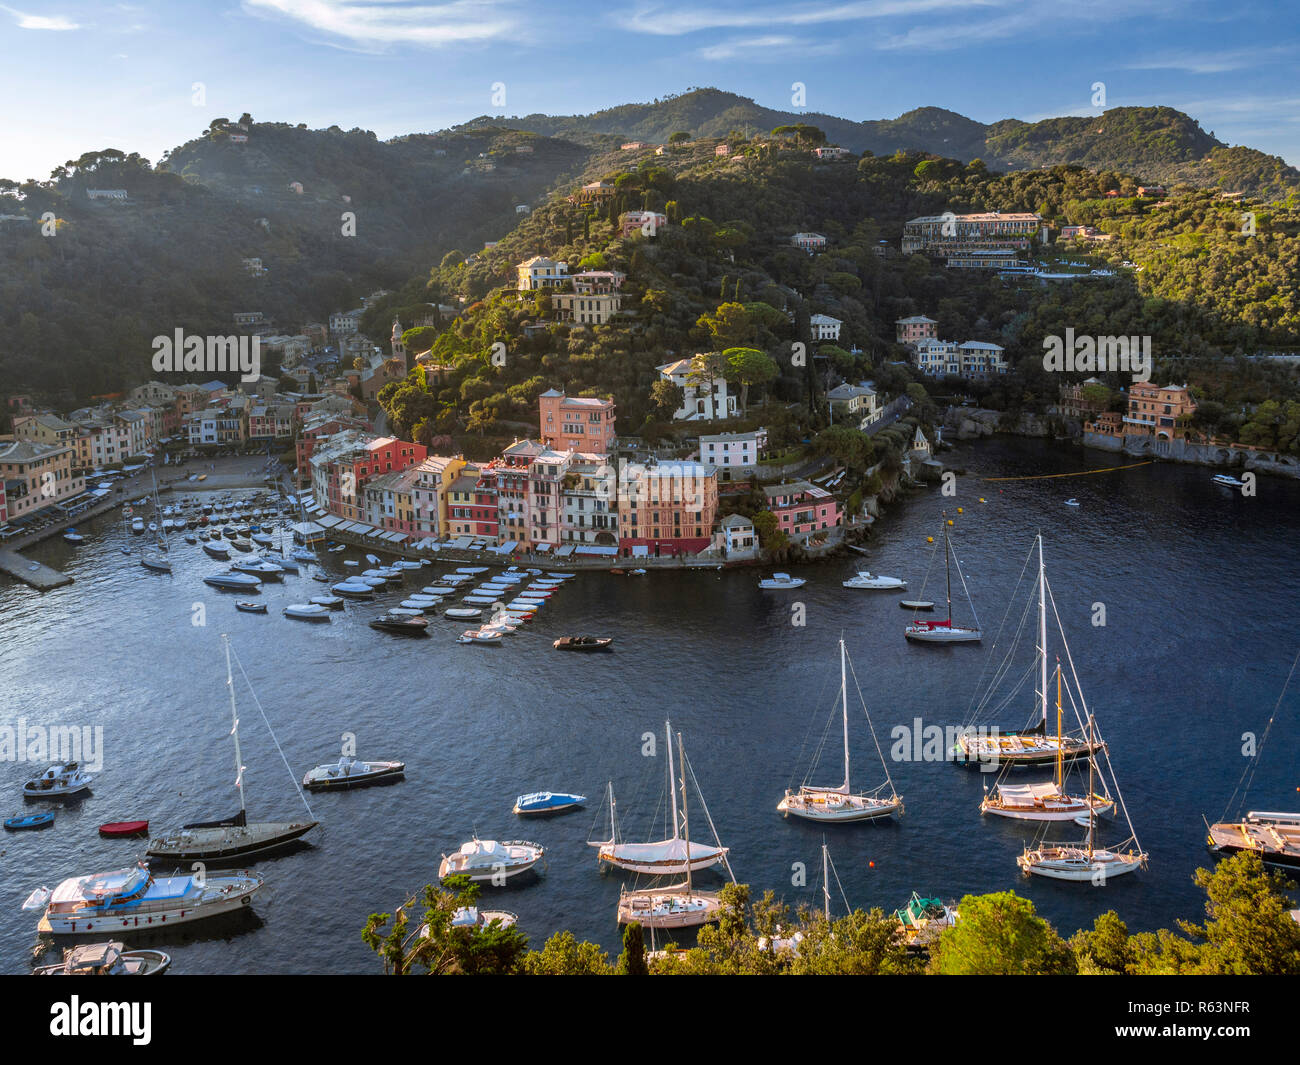 View of Portofino, Golfo Paradiso, Province of Genoa, Riviera di Levante, Liguria, Italy, Europe Stock Photo